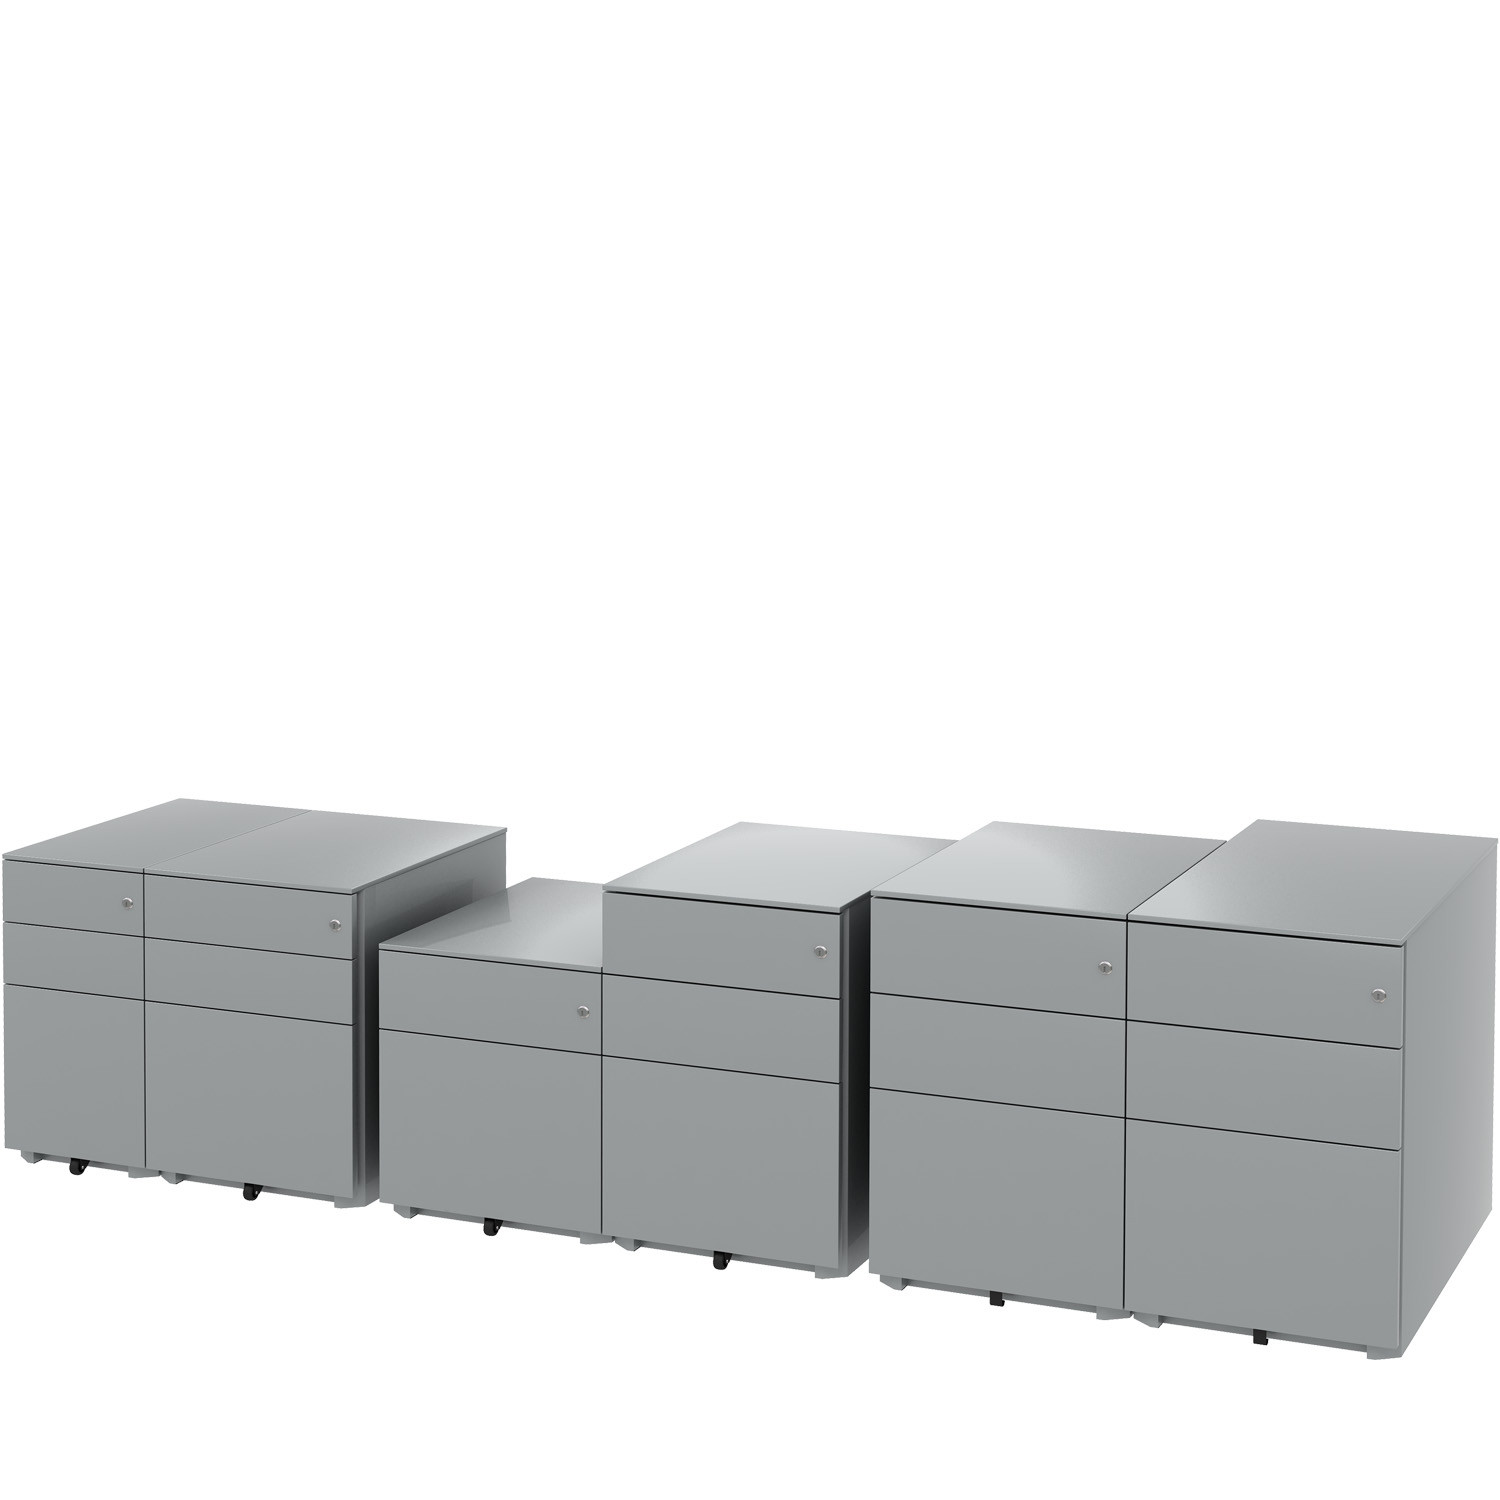 Desk Pedestals range by Silverline